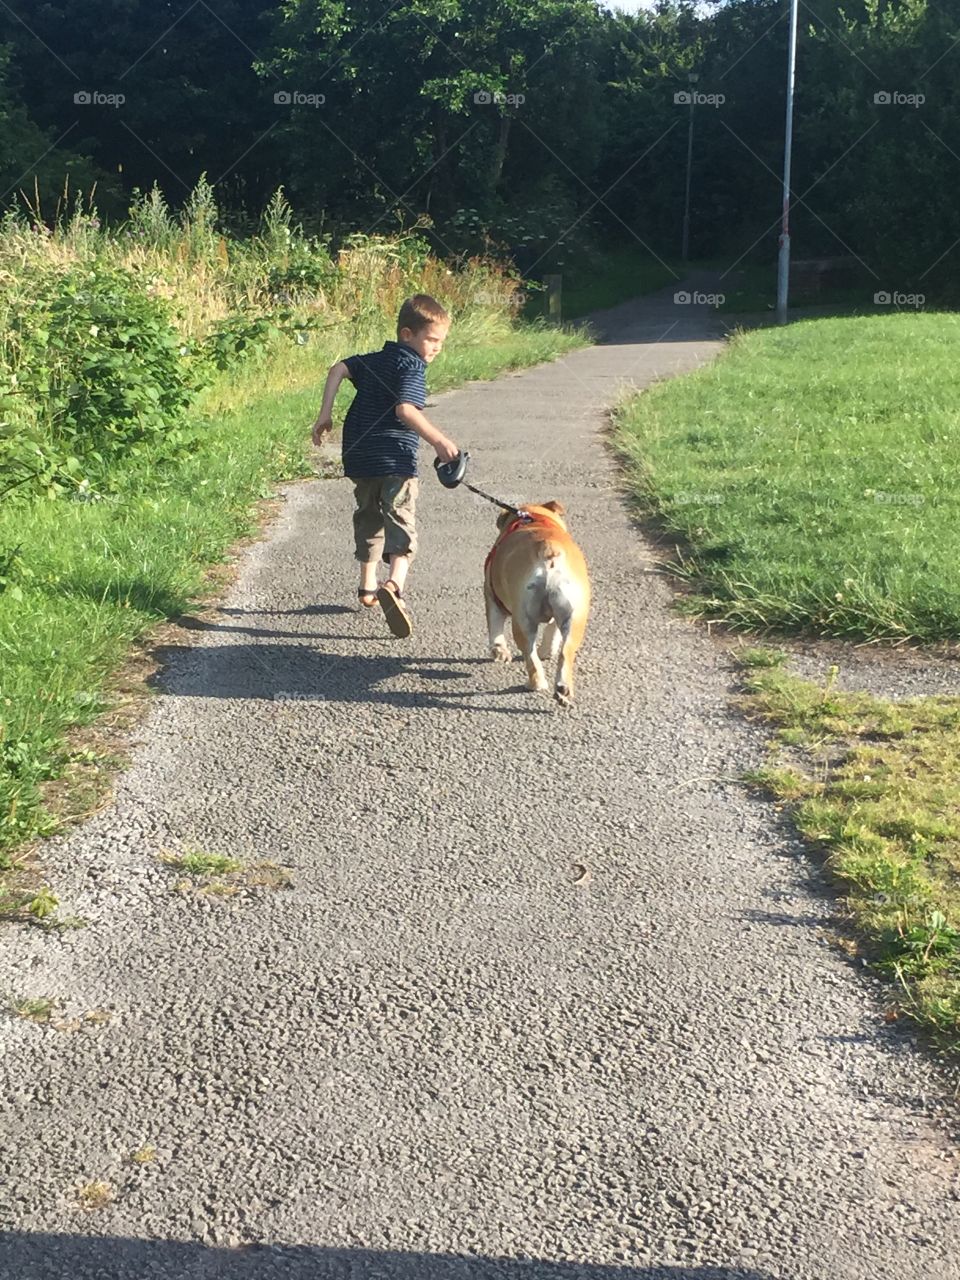 Child walking dog